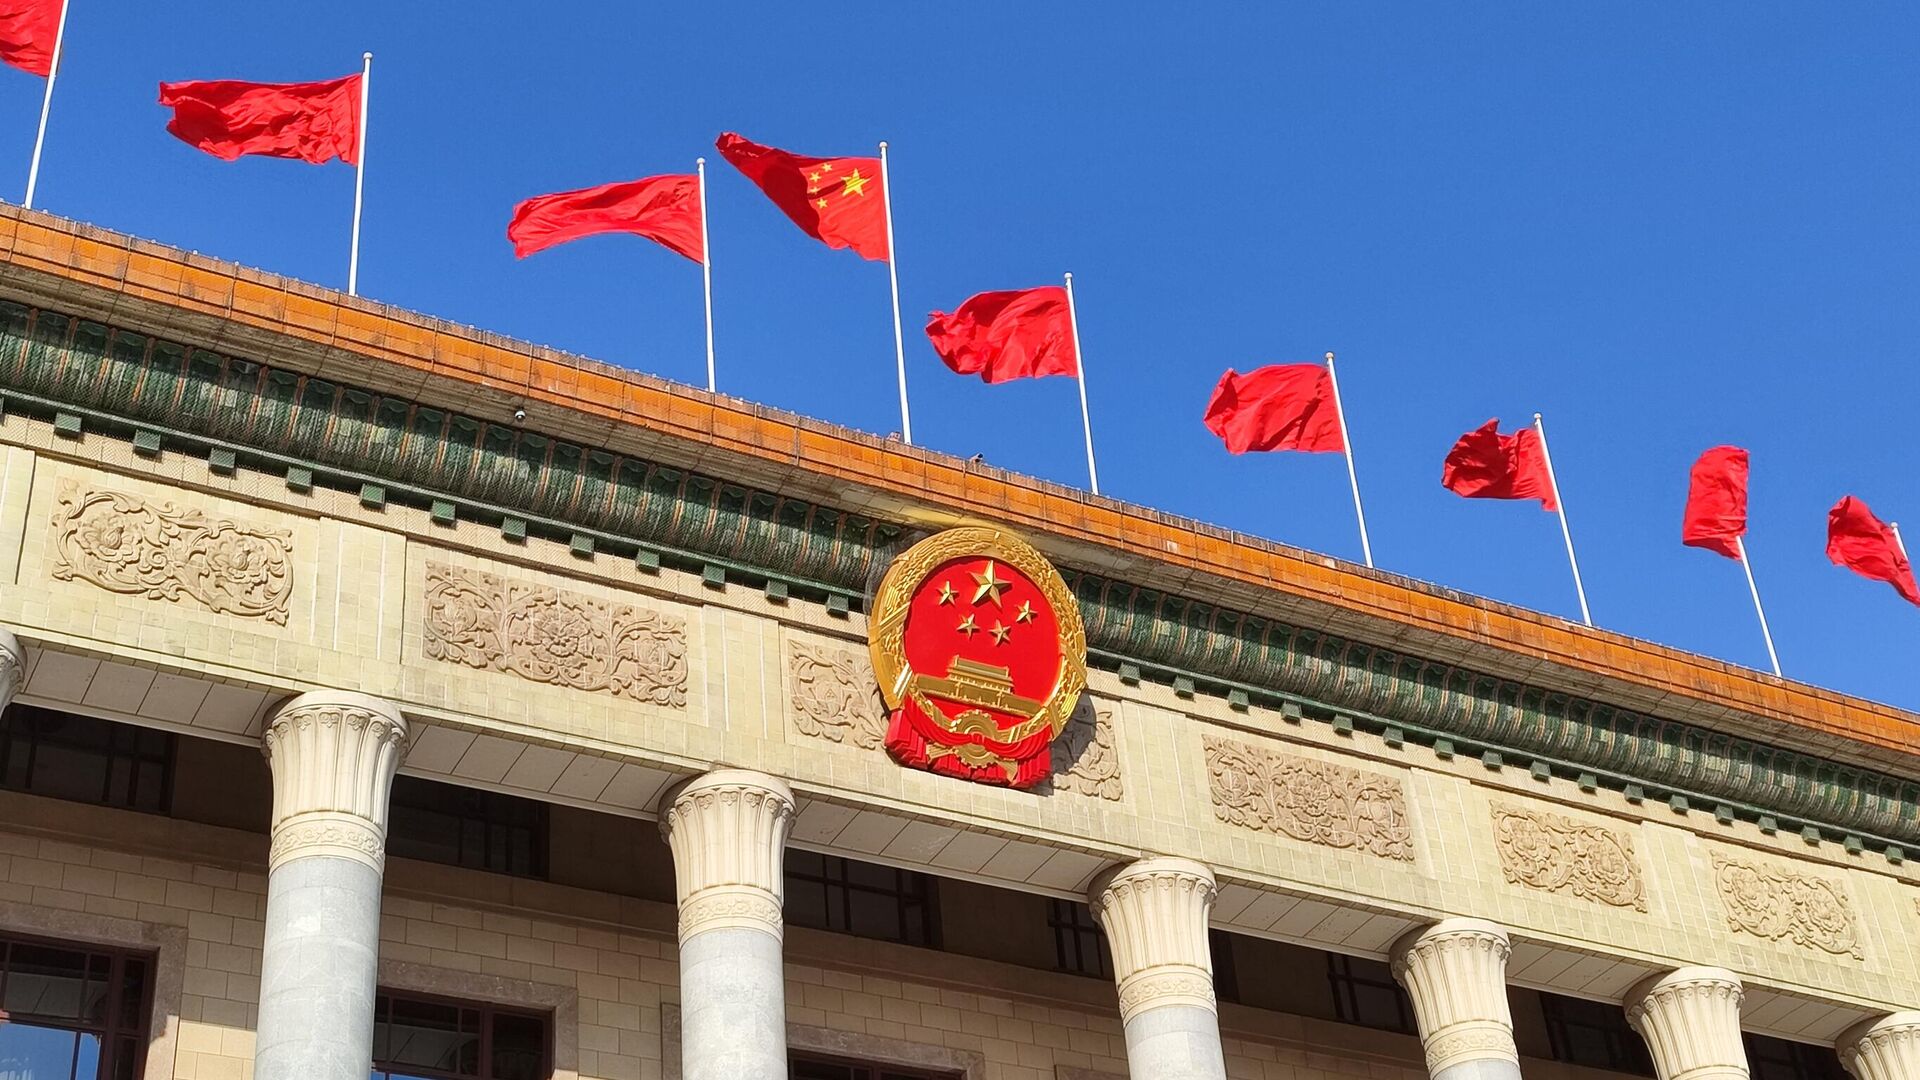 Đại hội ĐCSTQ phản đối độc lập Đài Loan: 

Đại hội Đảng Cộng sản Trung Quốc đã phản đối mạnh mẽ chính sách độc lập của Đài Loan, cho rằng đây là một hoạt động nguy hiểm và phản bội quan hệ đặc biệt giữa hai nước. Điều này ám chỉ rằng Trung Quốc sẽ tiếp tục cải cách nếu Đài Loan không tôn trọng quan điểm của Trung Quốc. Hãy xem hình ảnh liên quan để tìm hiểu thêm về cuộc đối thoại này.